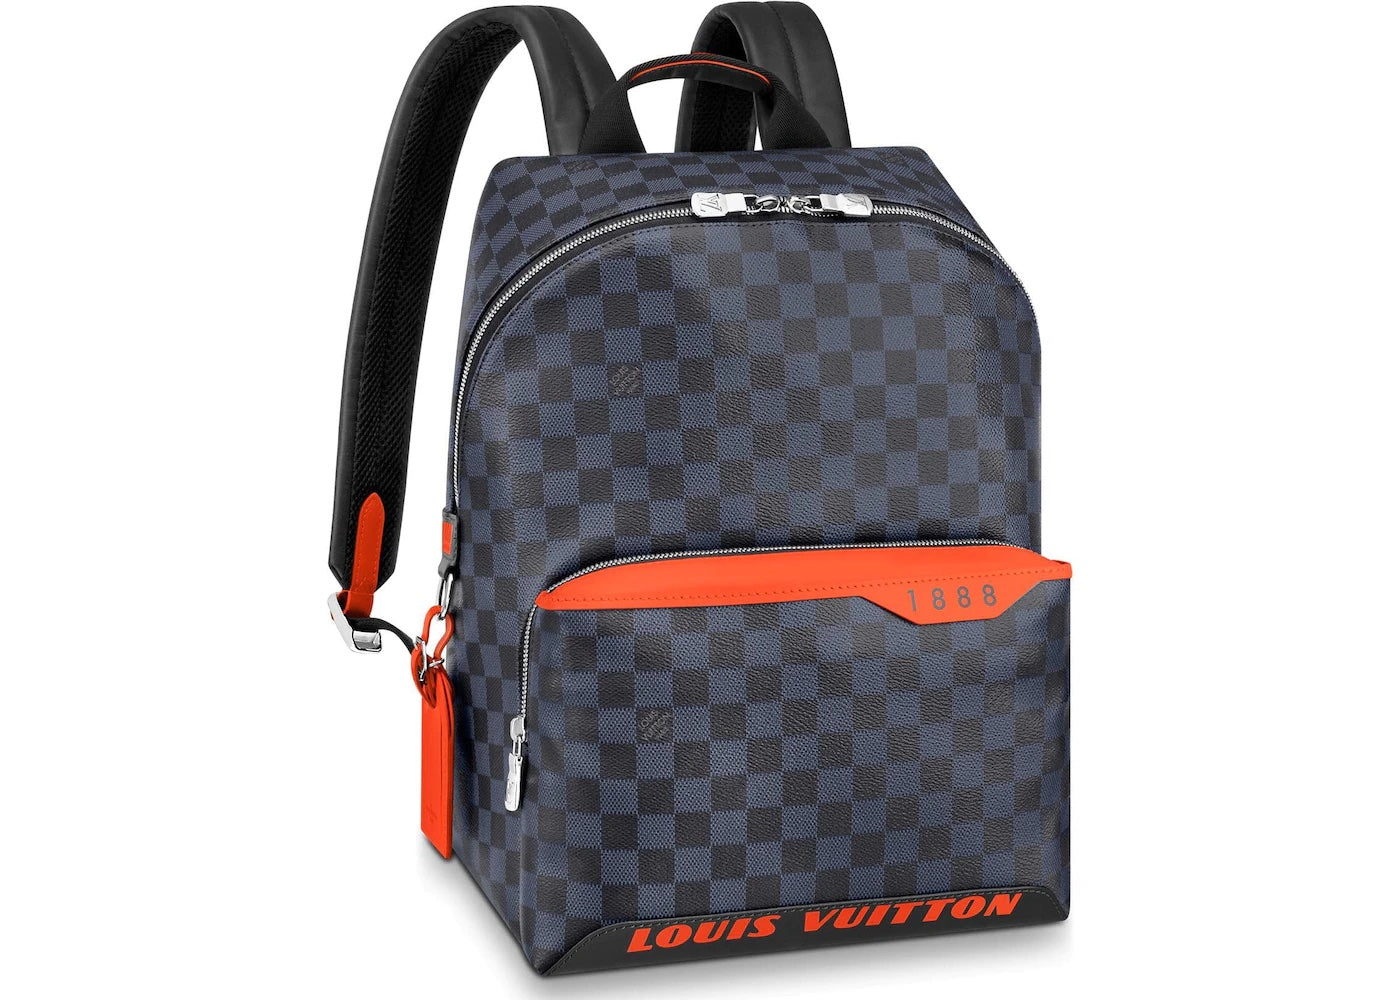 Louis+Vuitton+Discovery+Damier+Graphite+Belt+Bag+Black+Canvas for sale  online